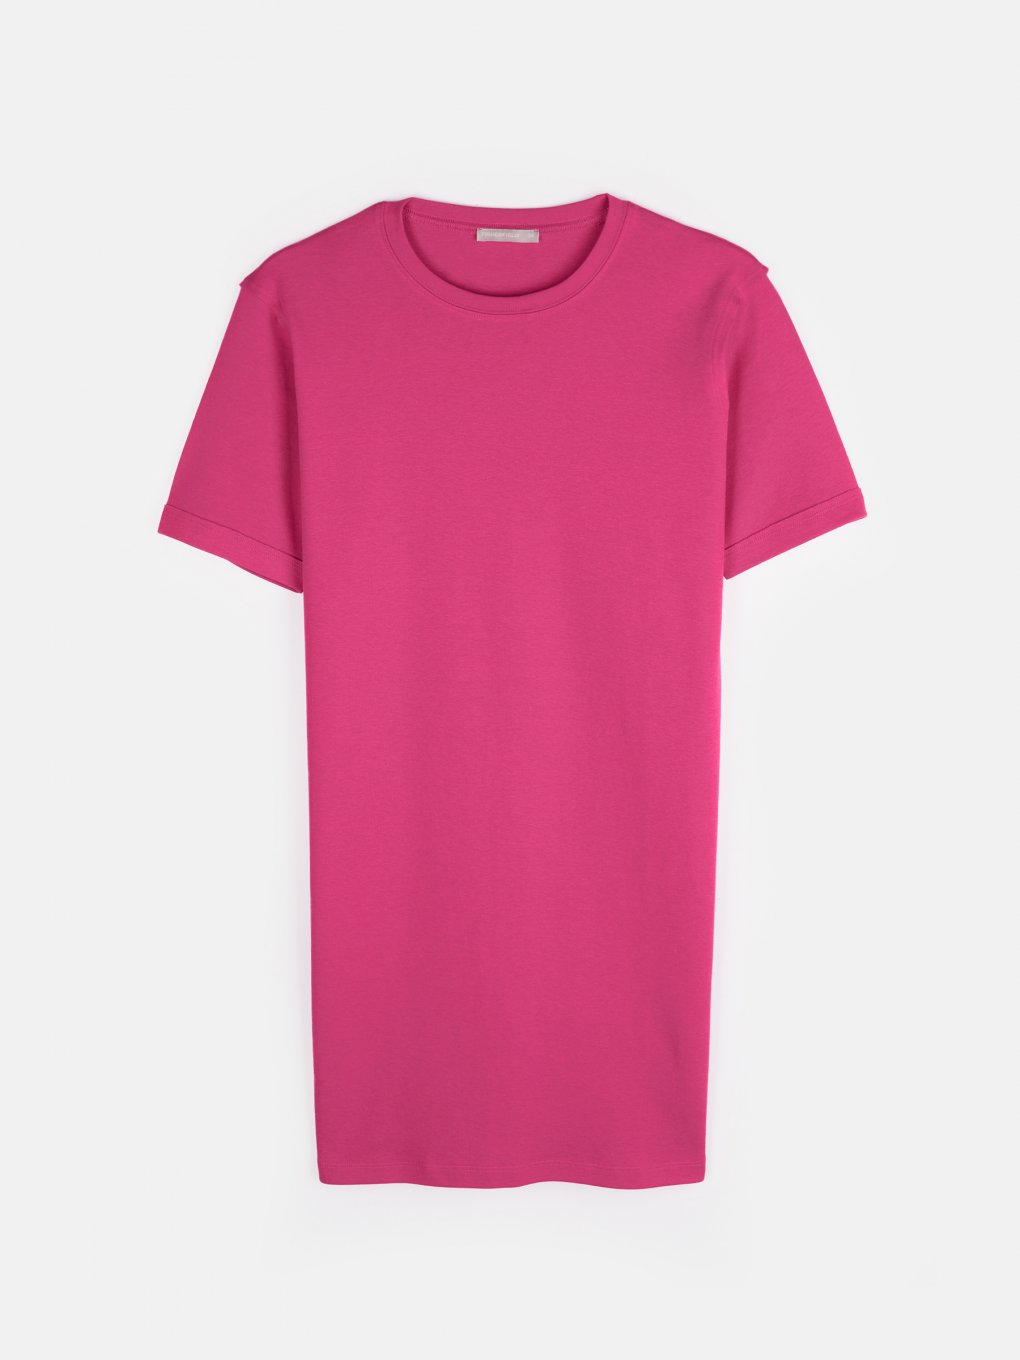 Podstawowa sukienka t-shirtowa z krótkim rękawem dla kobiet